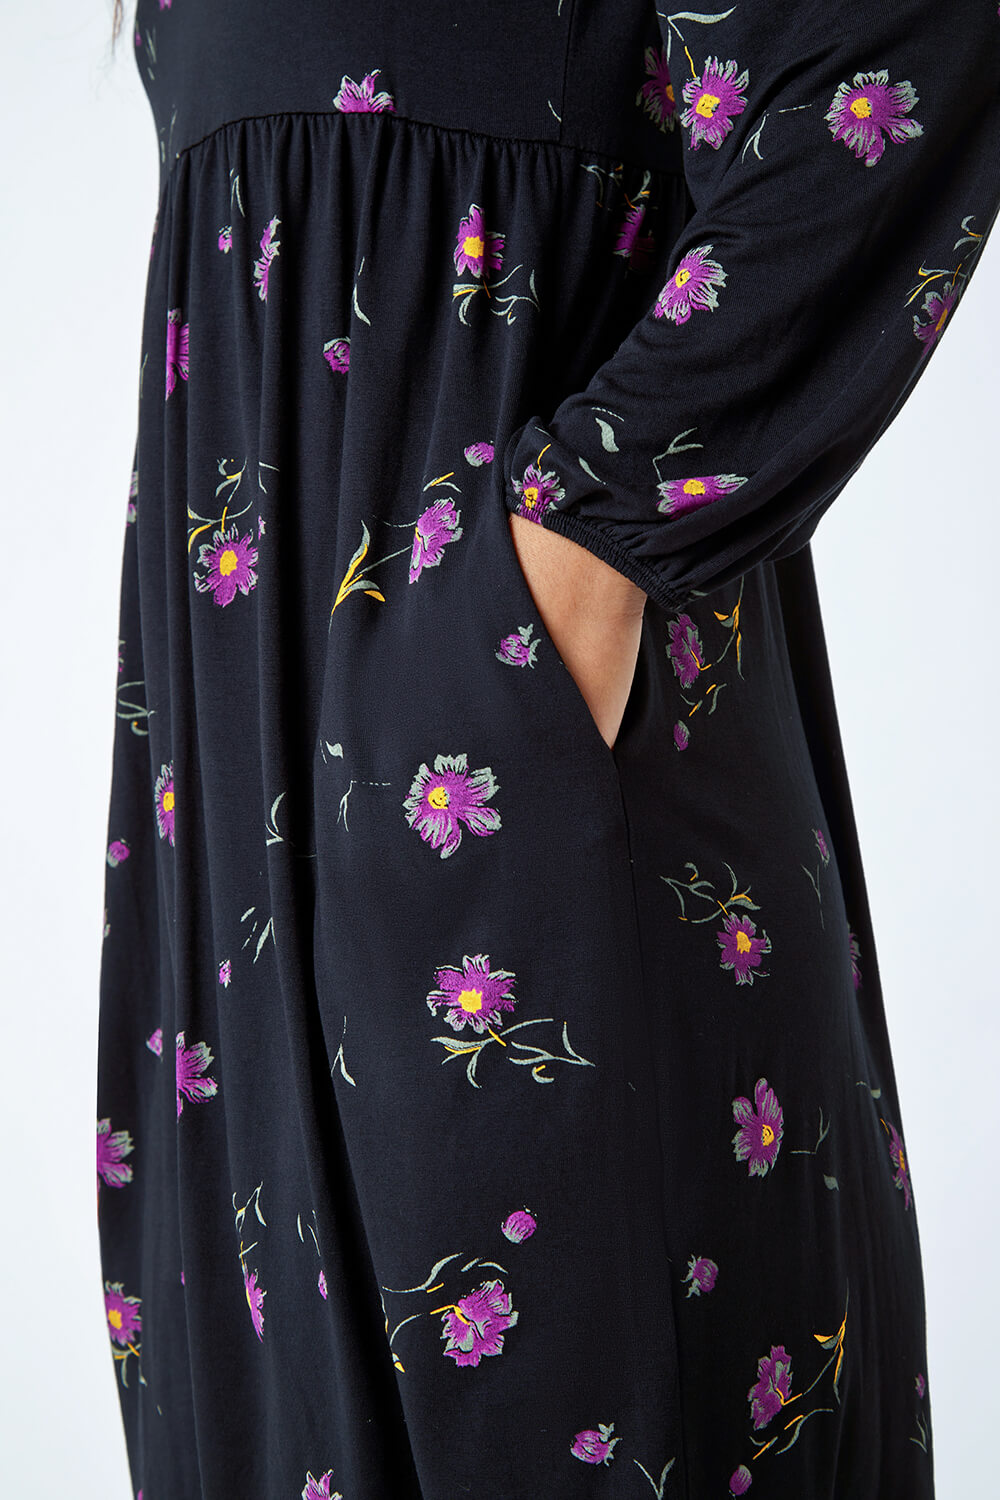 Black Floral Print Pocket Stretch Smock Dress, Image 5 of 5